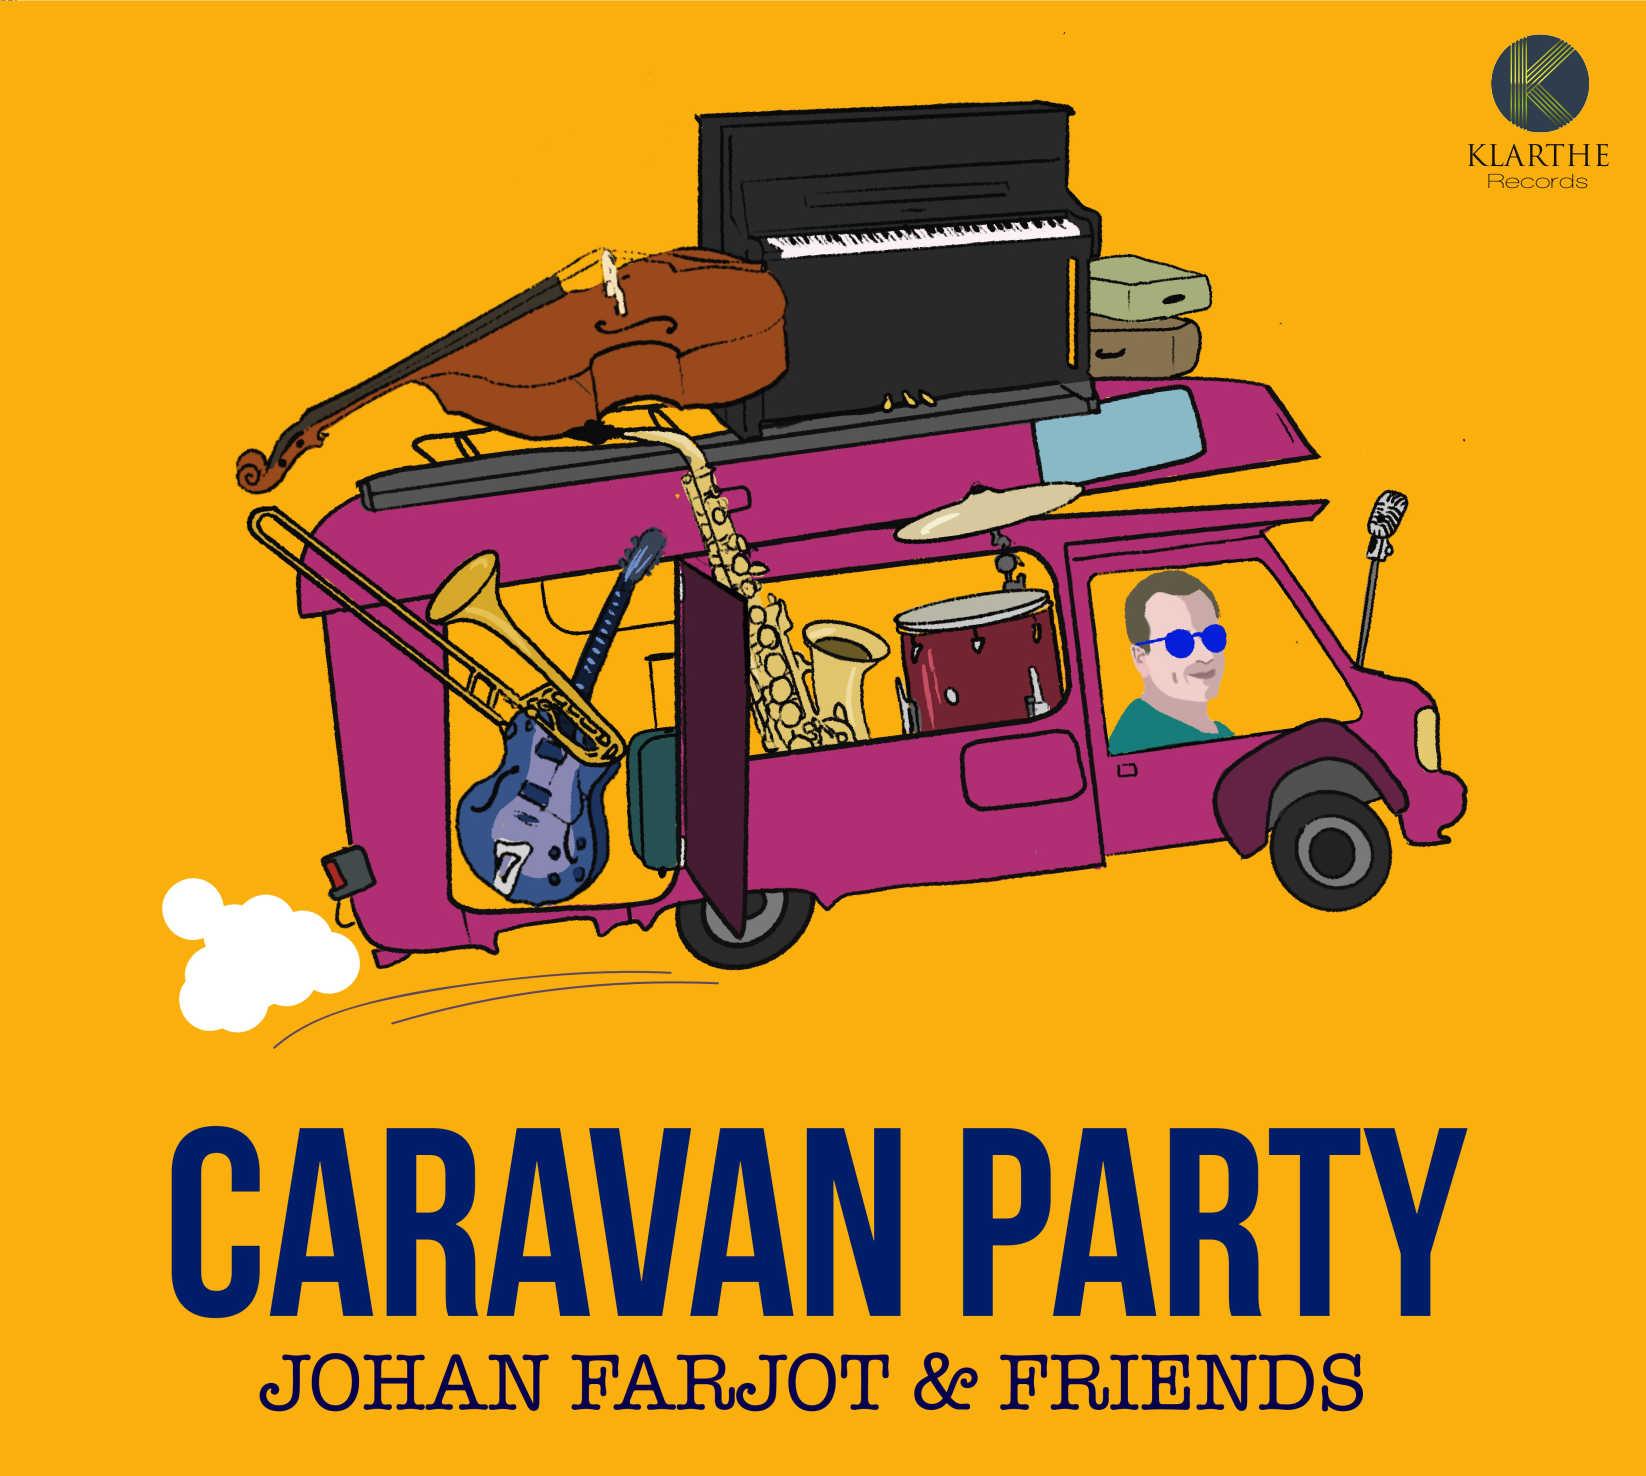 Caravan party